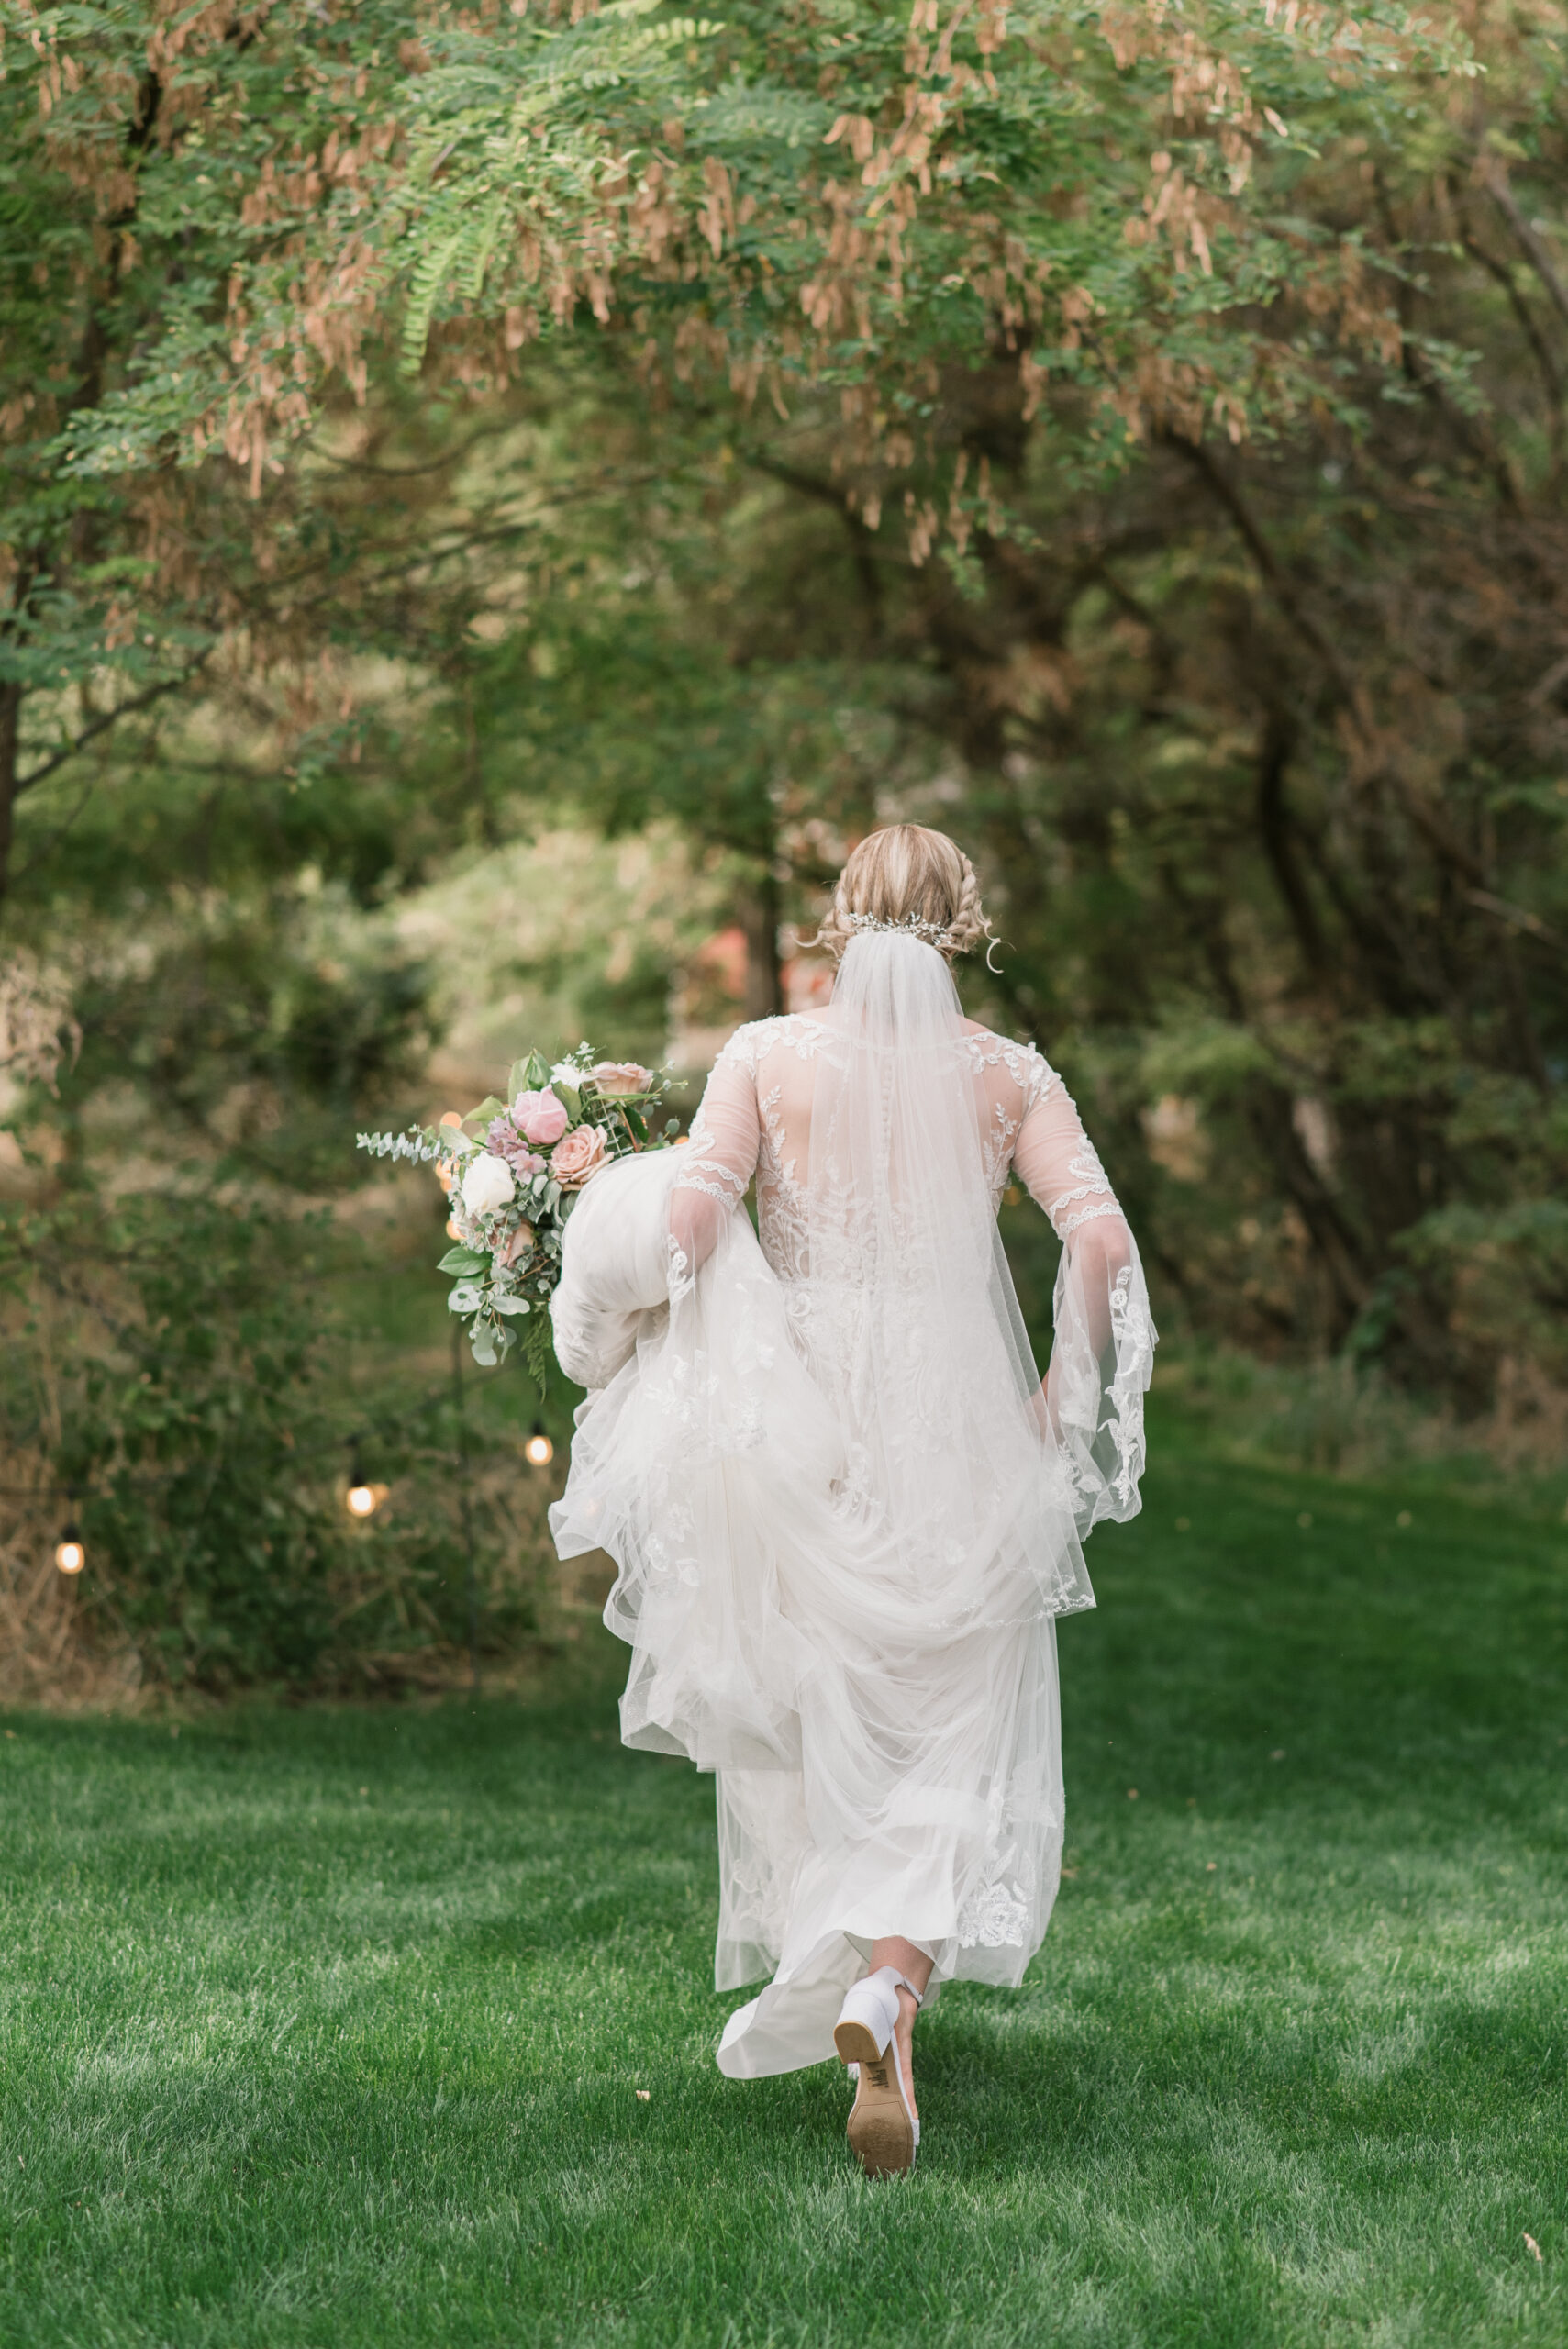 candid wedding photography of bride walking away